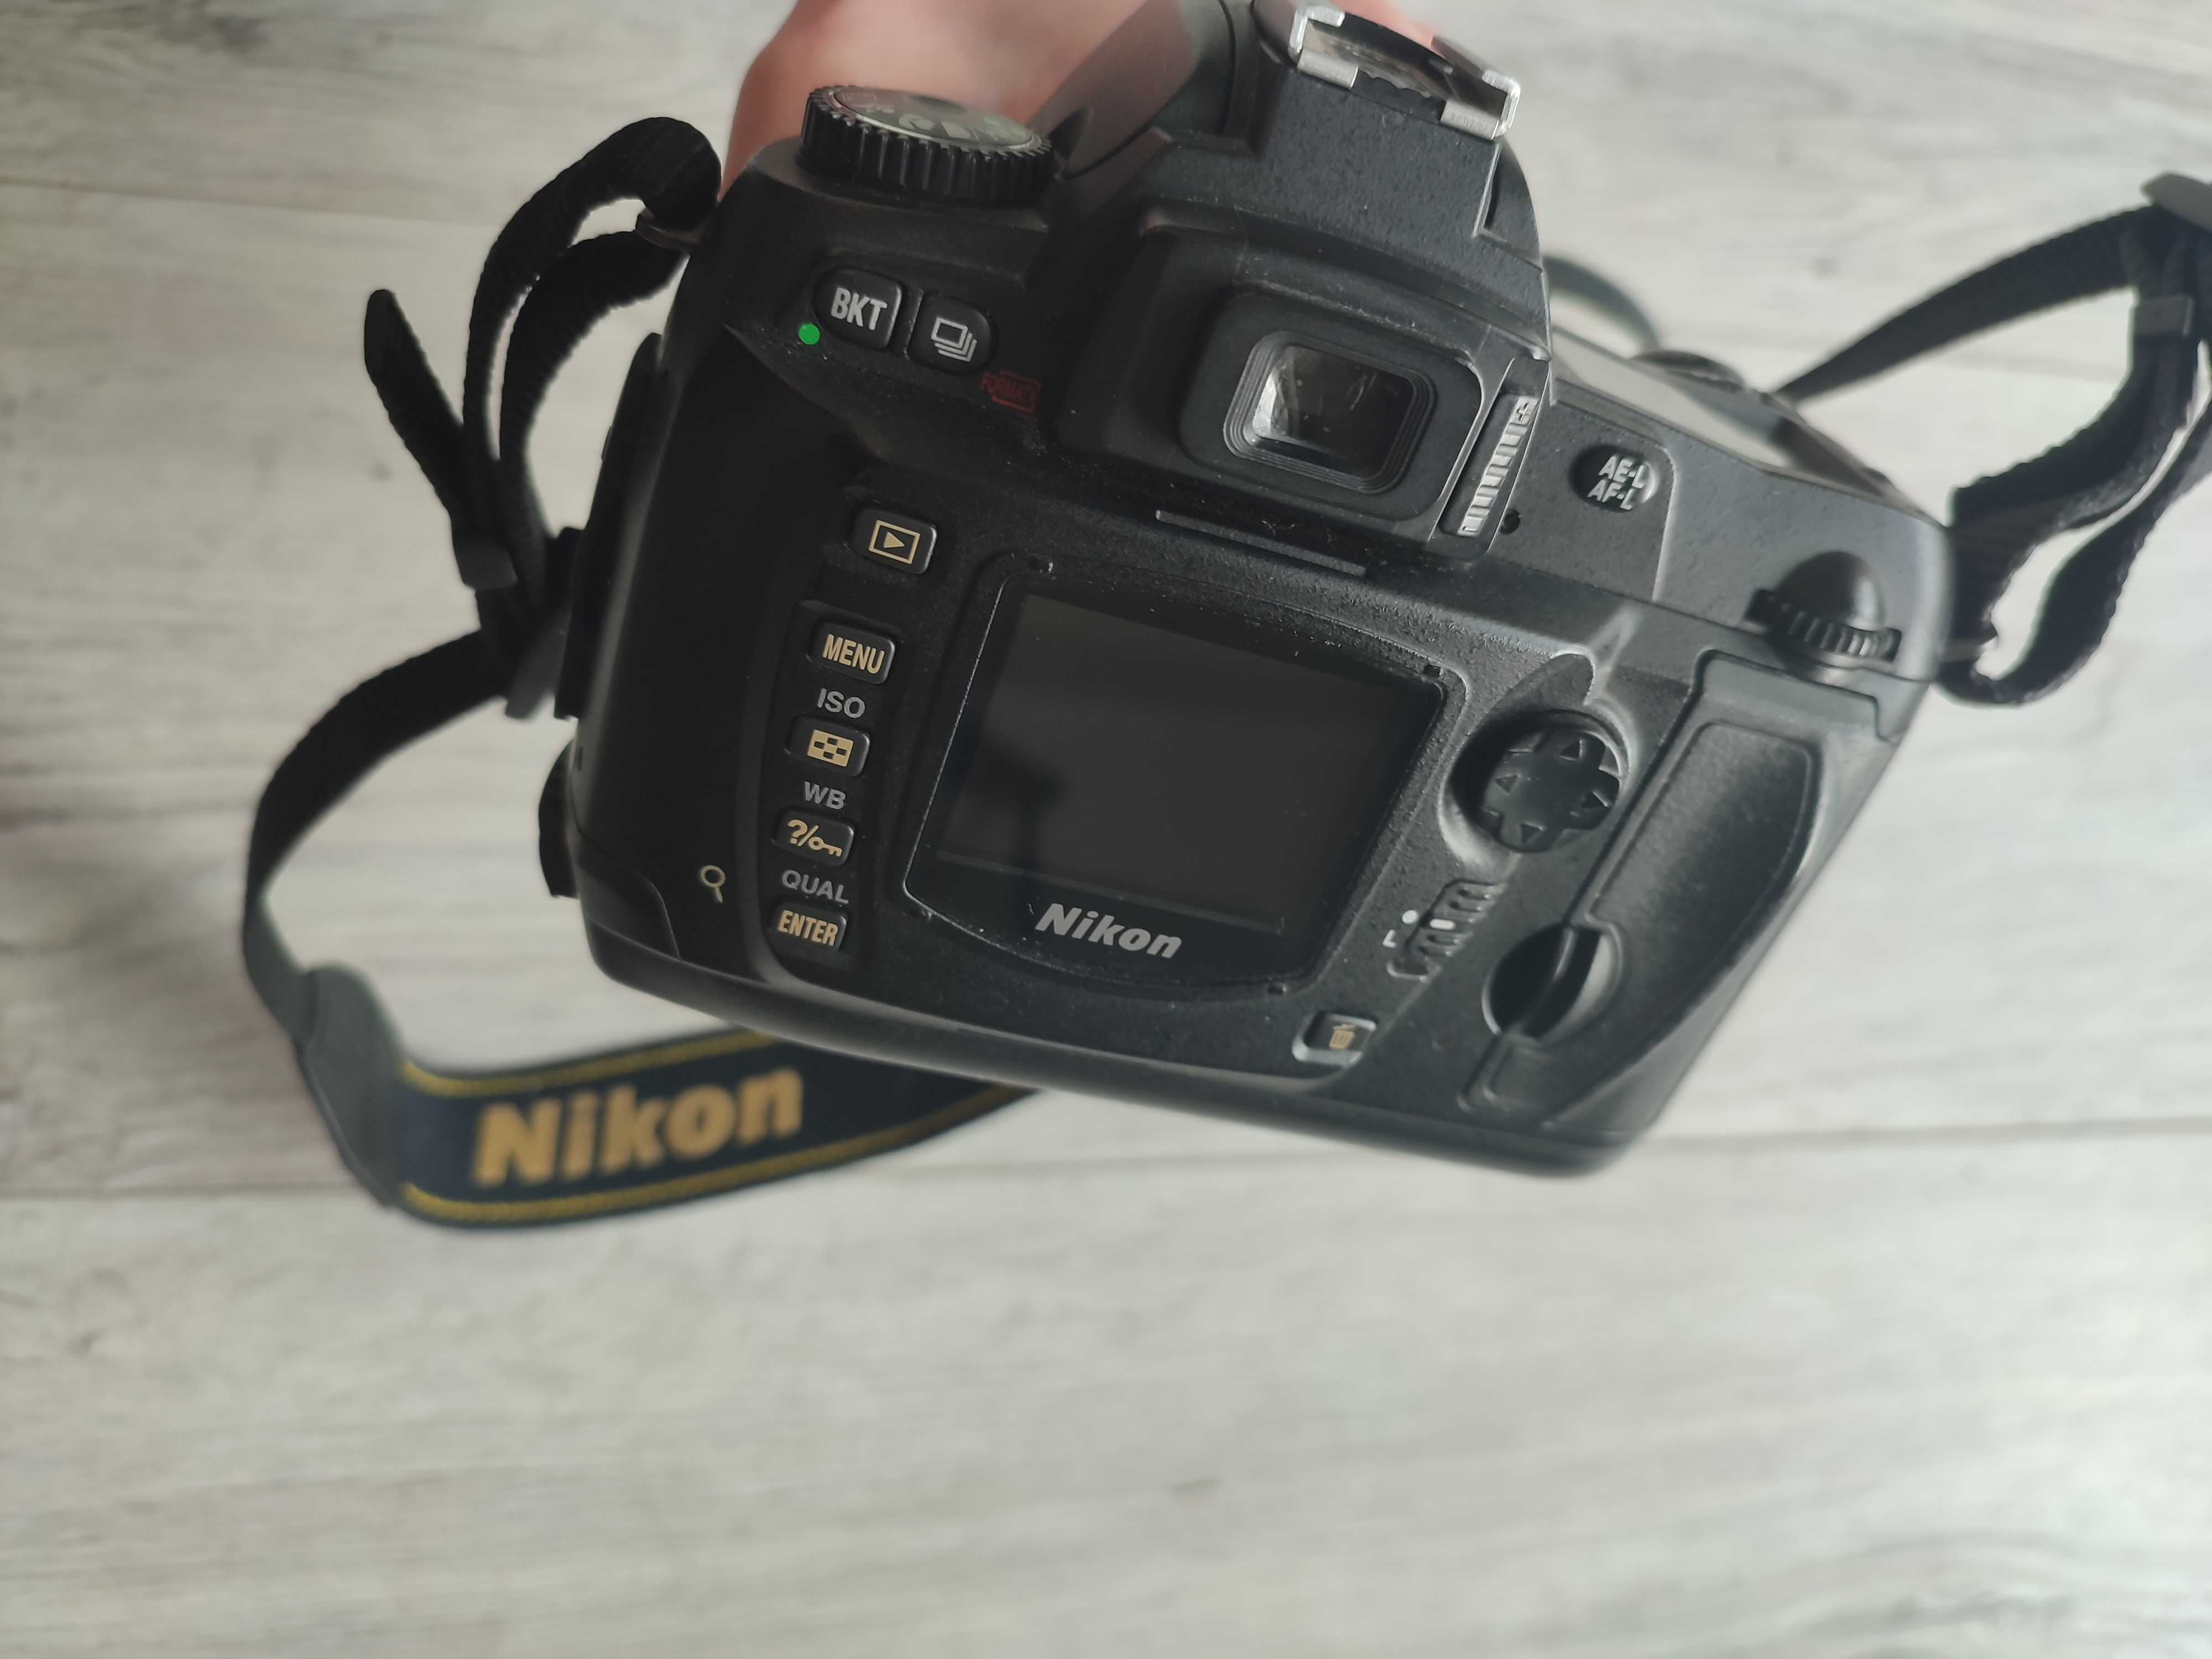 Aparat Nikon d70 nikkor 18-55